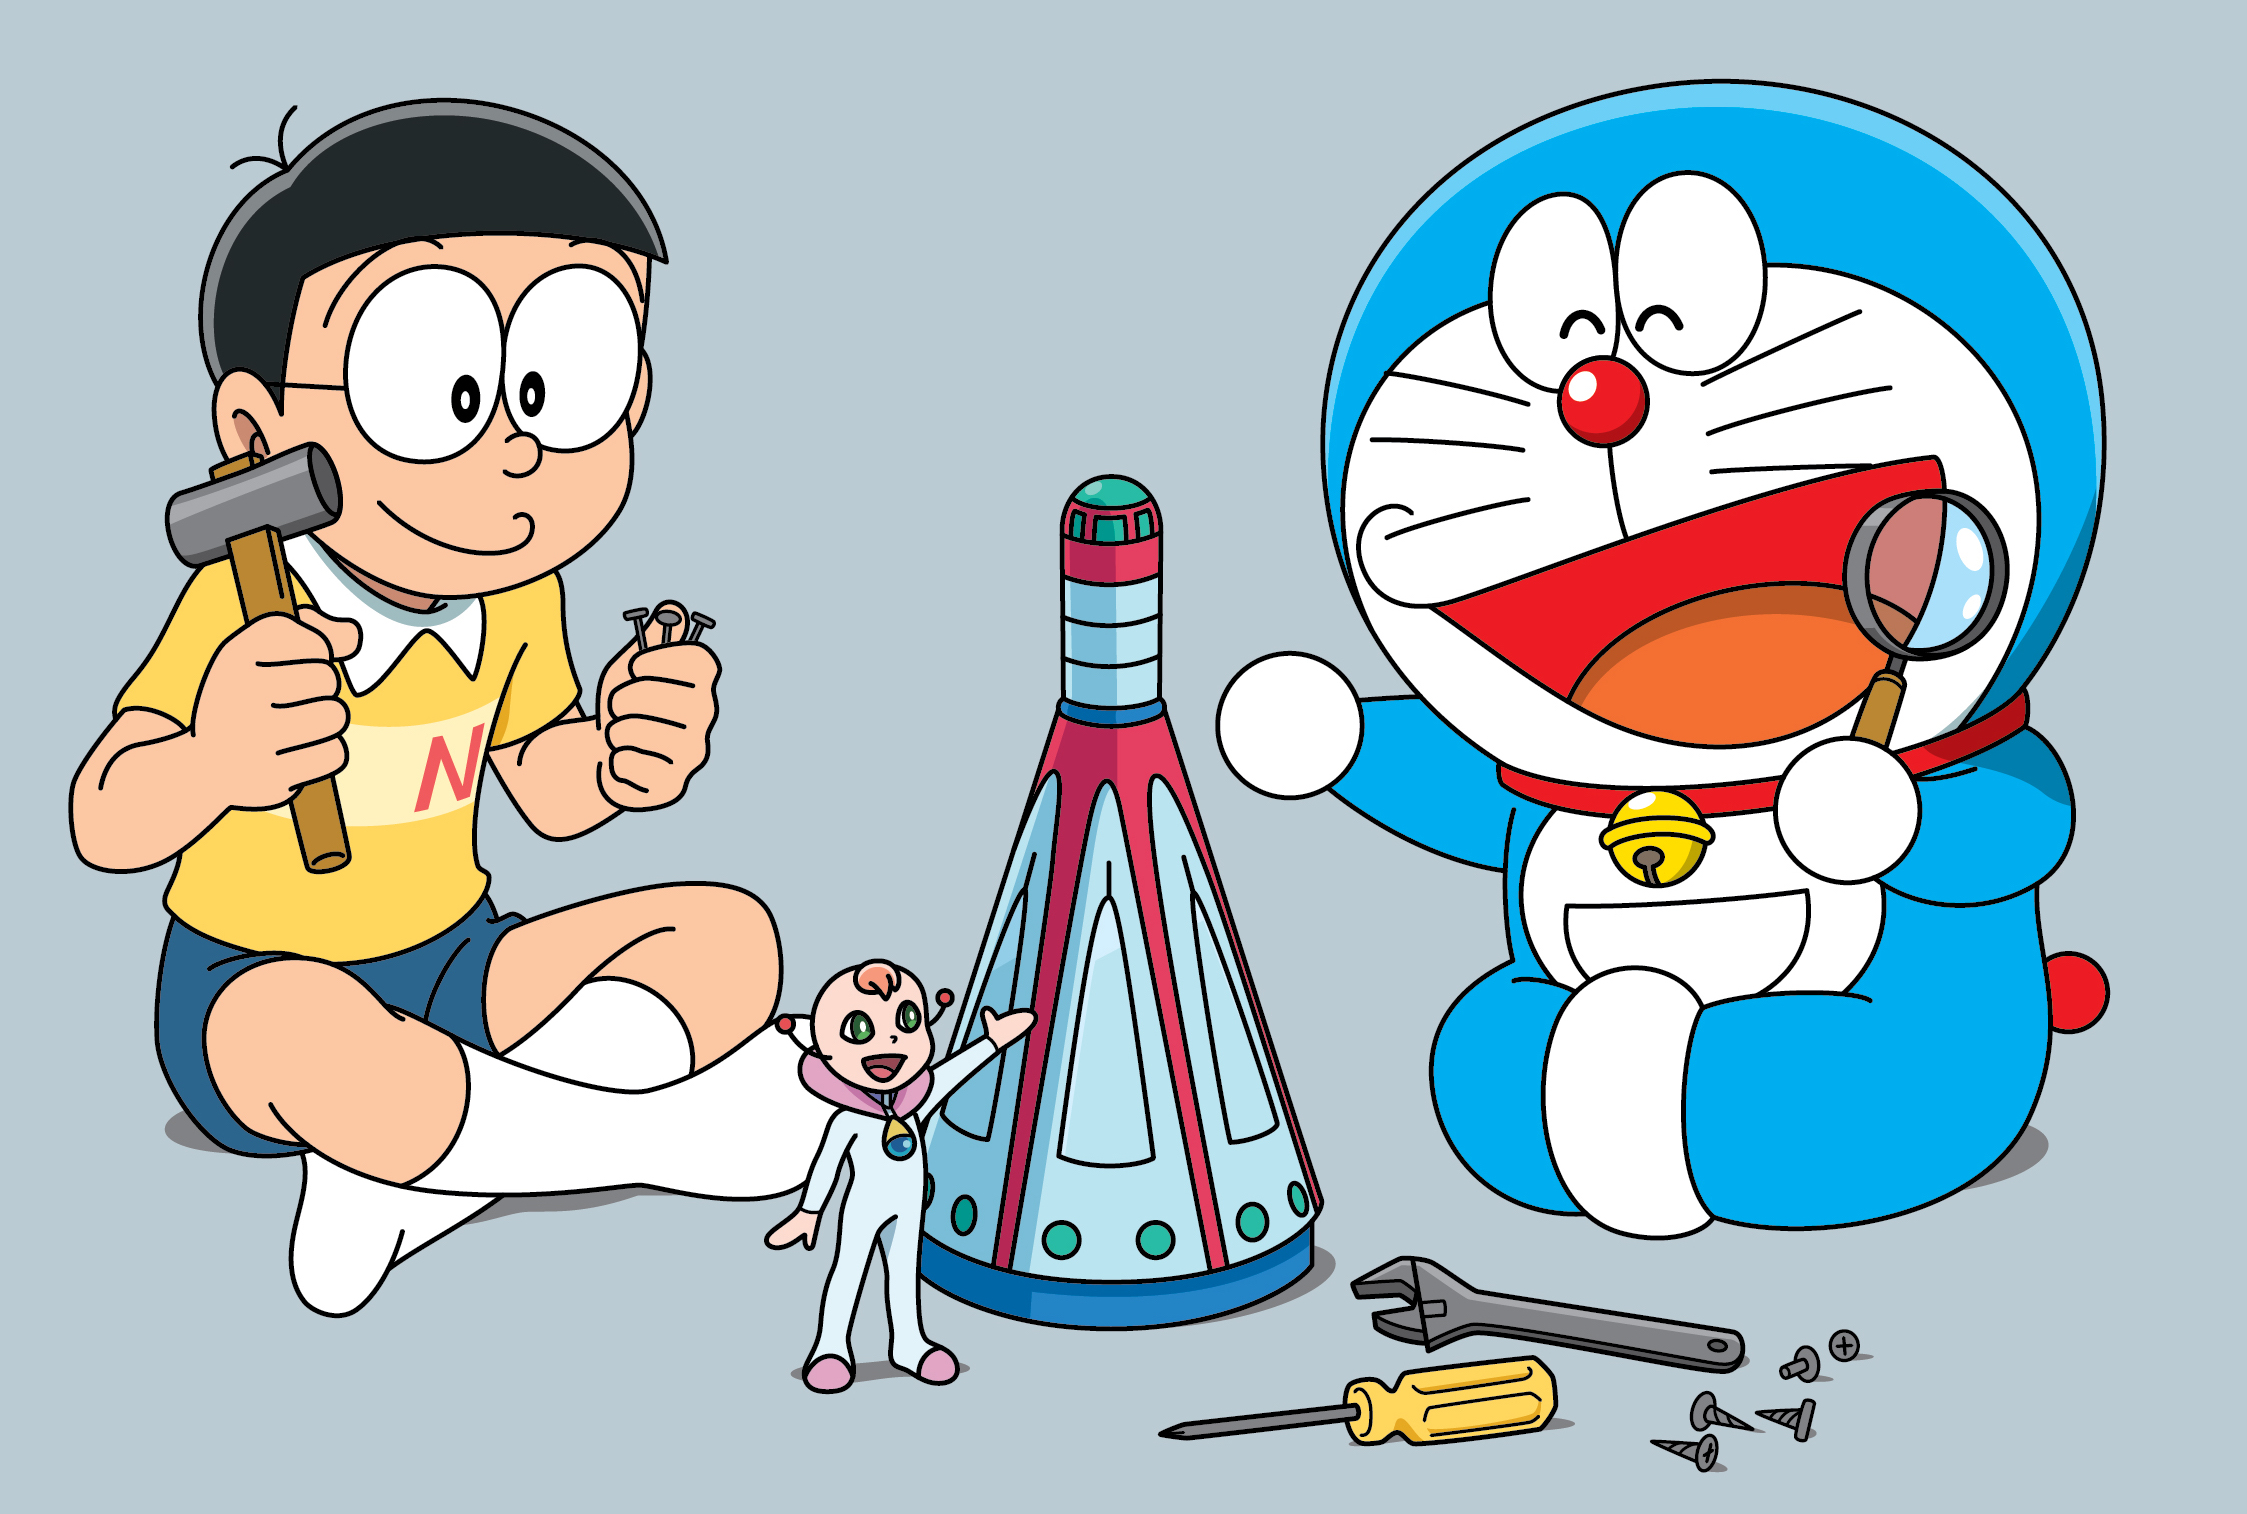 Mèo Ú Doraemon - một nhân vật quen thuộc của các fan hâm mộ Doremon đã trở lại! Anh ta đáng yêu và hài hước không chỉ khiến trẻ nhỏ mà cả người lớn cũng phải cười đau bụng. Hãy xem hình ảnh này và thưởng thức những phút giây thư giãn.